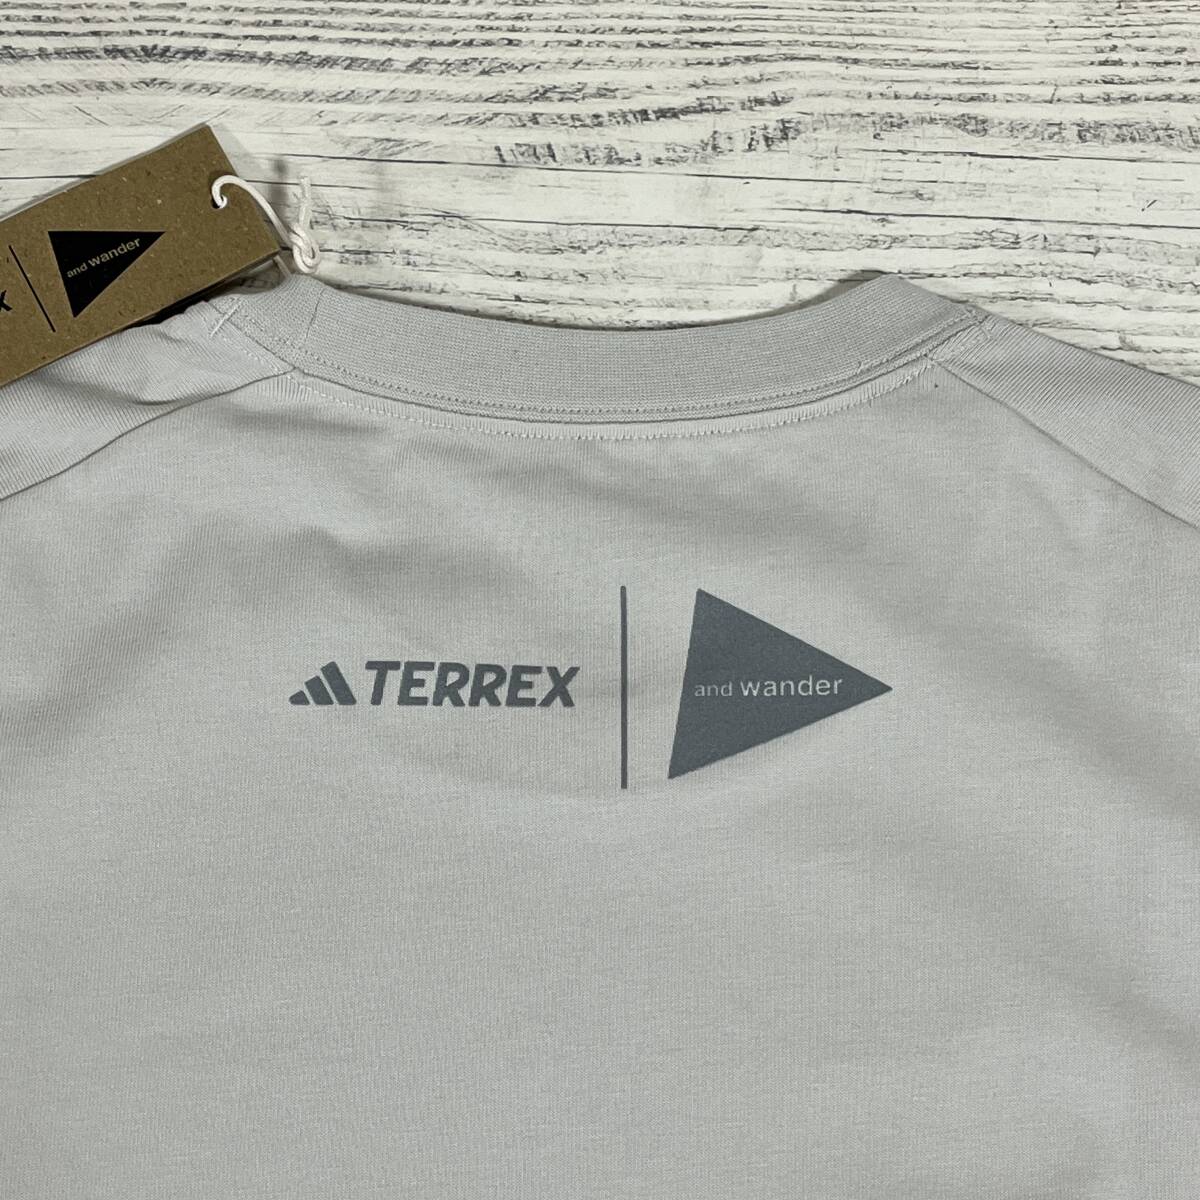 adidas TERREX(アディダス テレックス) x and wander(アンドワンダー) - コラボ グラフィックTシャツ XLサイズ (タグ付き新品未使用品)_実物⑥